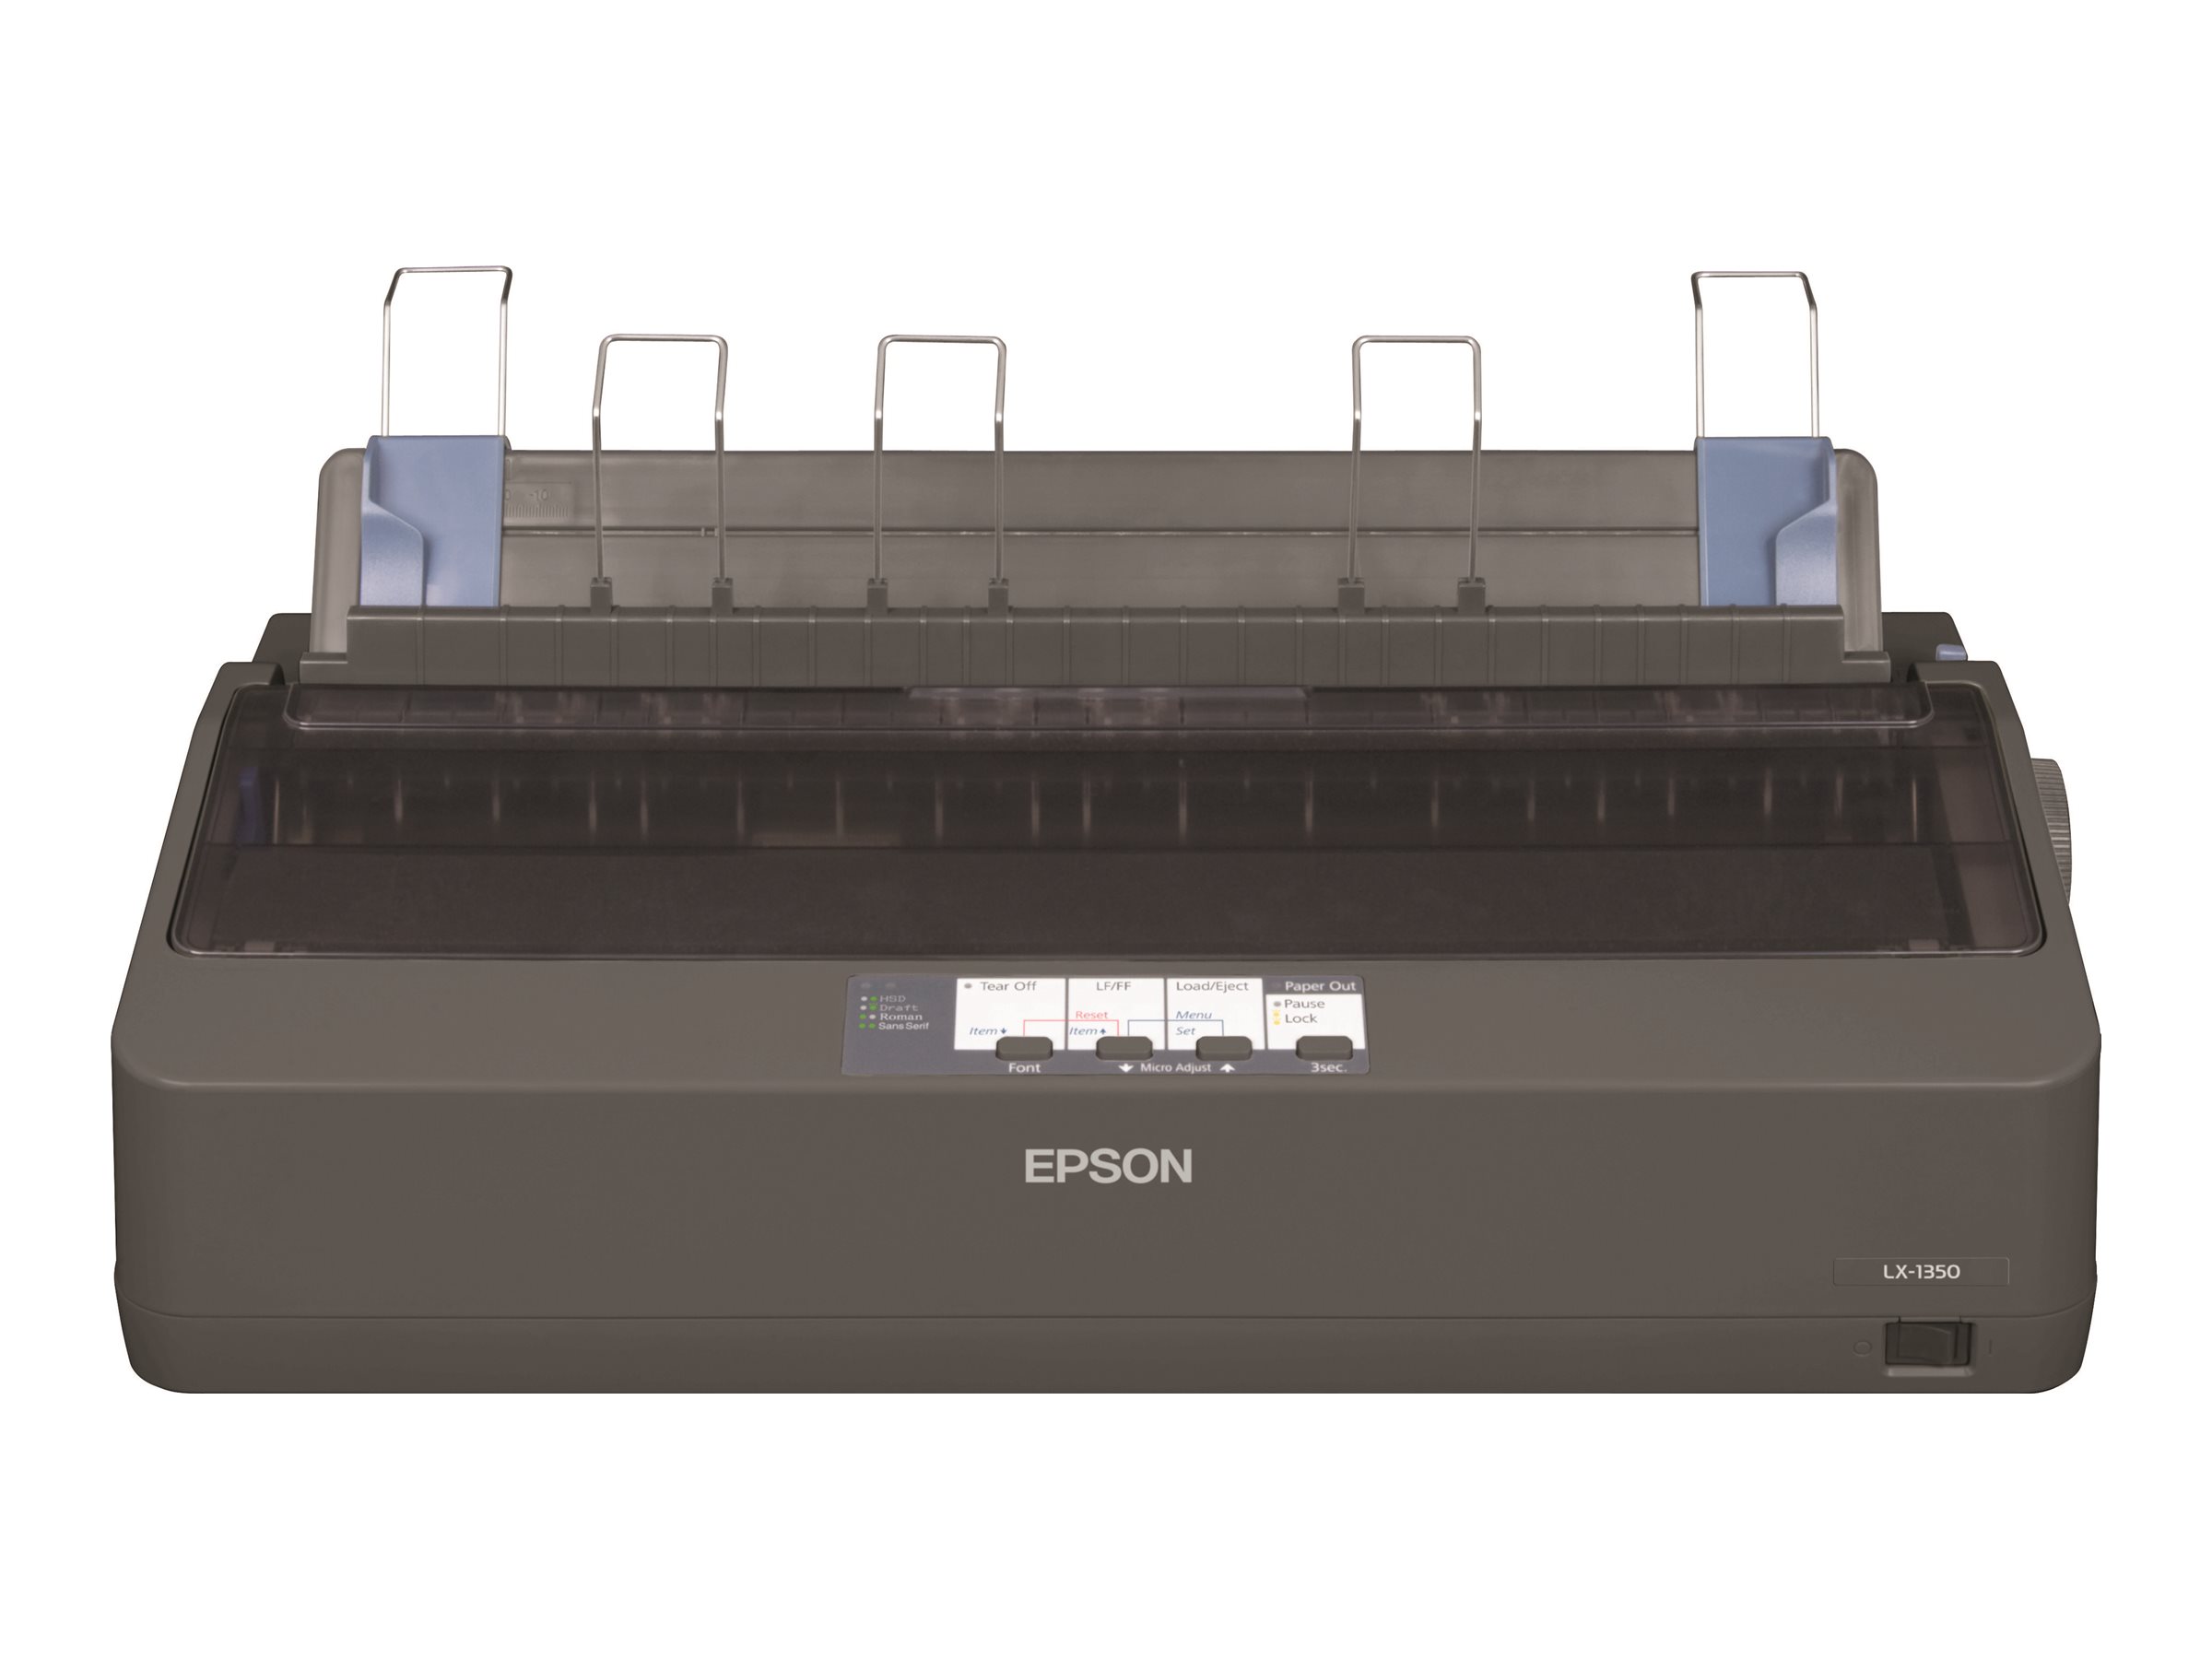 Epson LX 1350 - Imprimante - Noir et blanc - matricielle - A3 - 240 x 144 dpi - 9 pin - jusqu'à 357 car/sec - parallèle, USB, série - C11CD24301 - Imprimantes matricielles